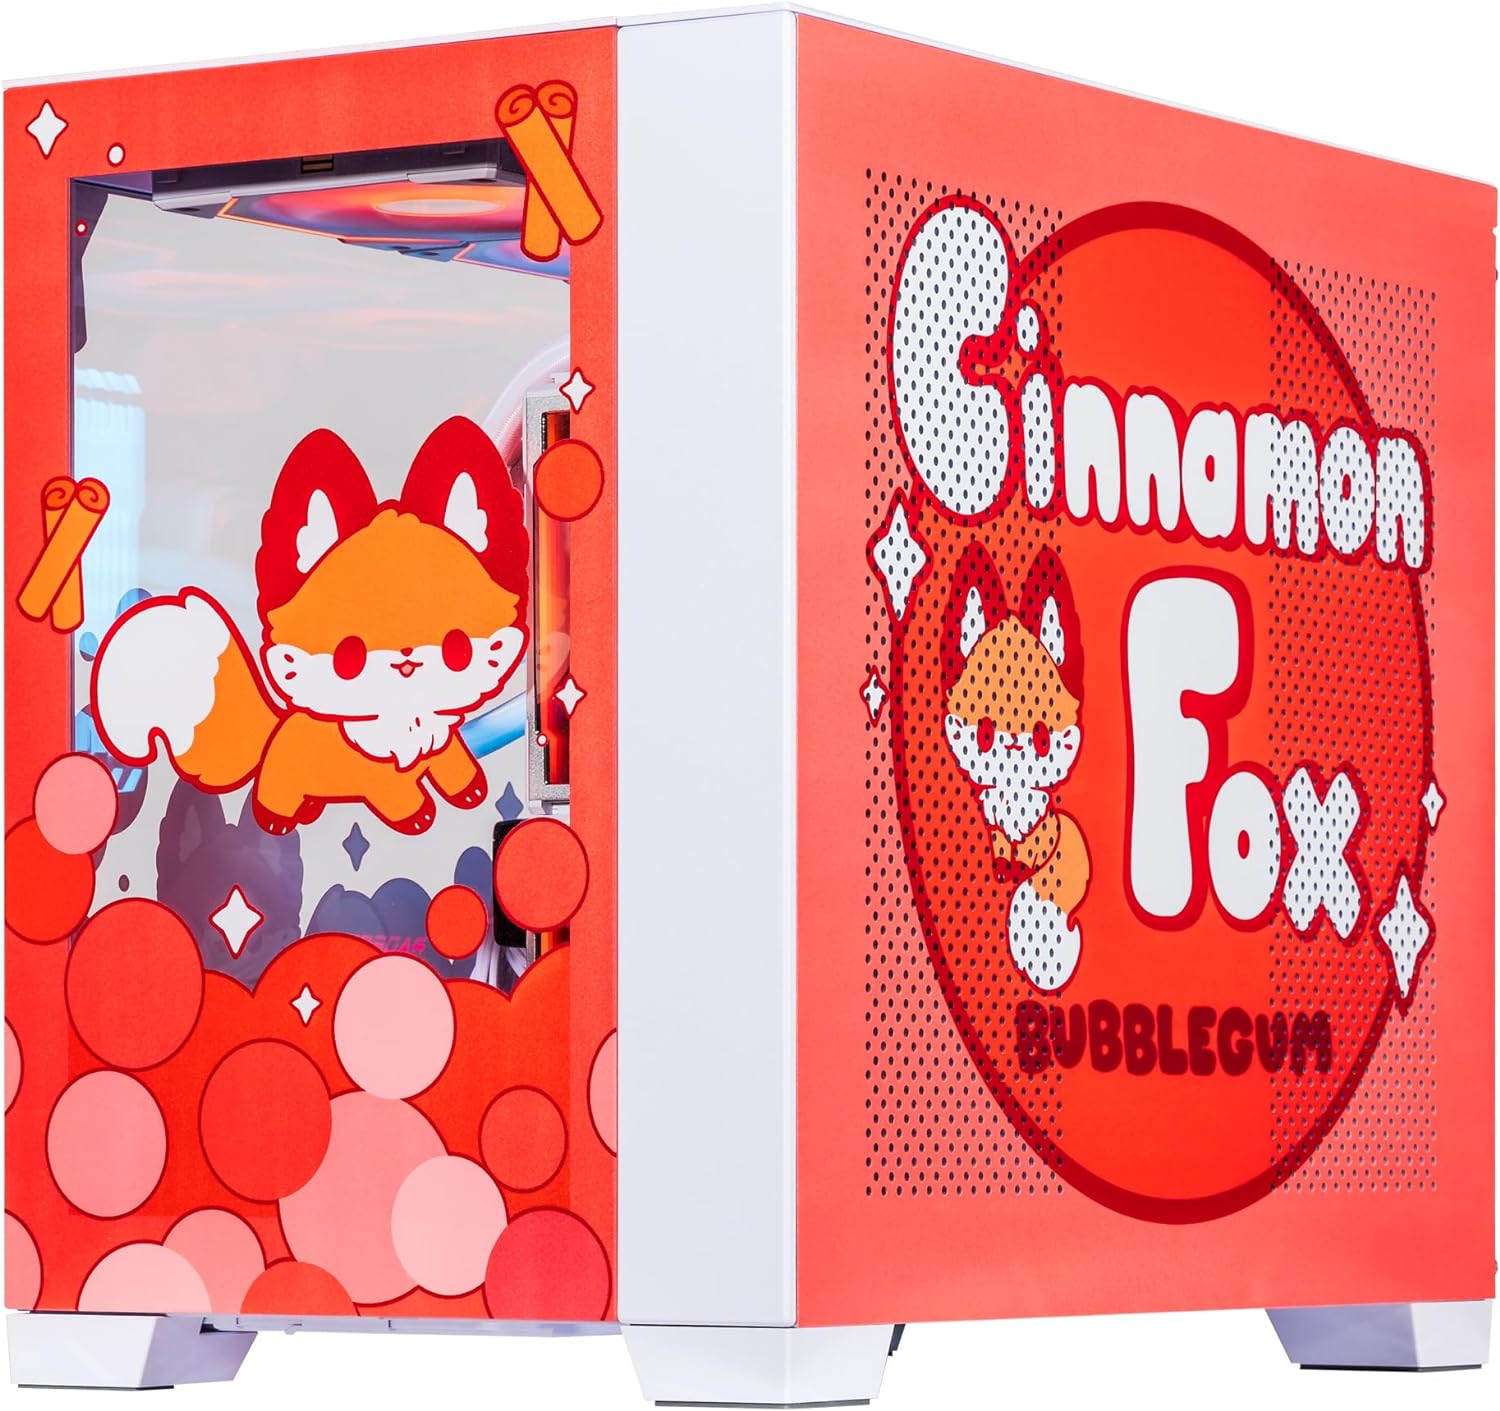 Velztorm Cinnamon Fox Custom Built Gaming Desktop PC (AMD Ryzen 7 5700X 8-Core, 128GB RAM, 8TB PCIe SSD + 6TB HDD (3.5), Radeon RX 6600 XT, WiFi, Bluetooth, HDMI, USB 3.2, USB 3.1, Win 10 Home)